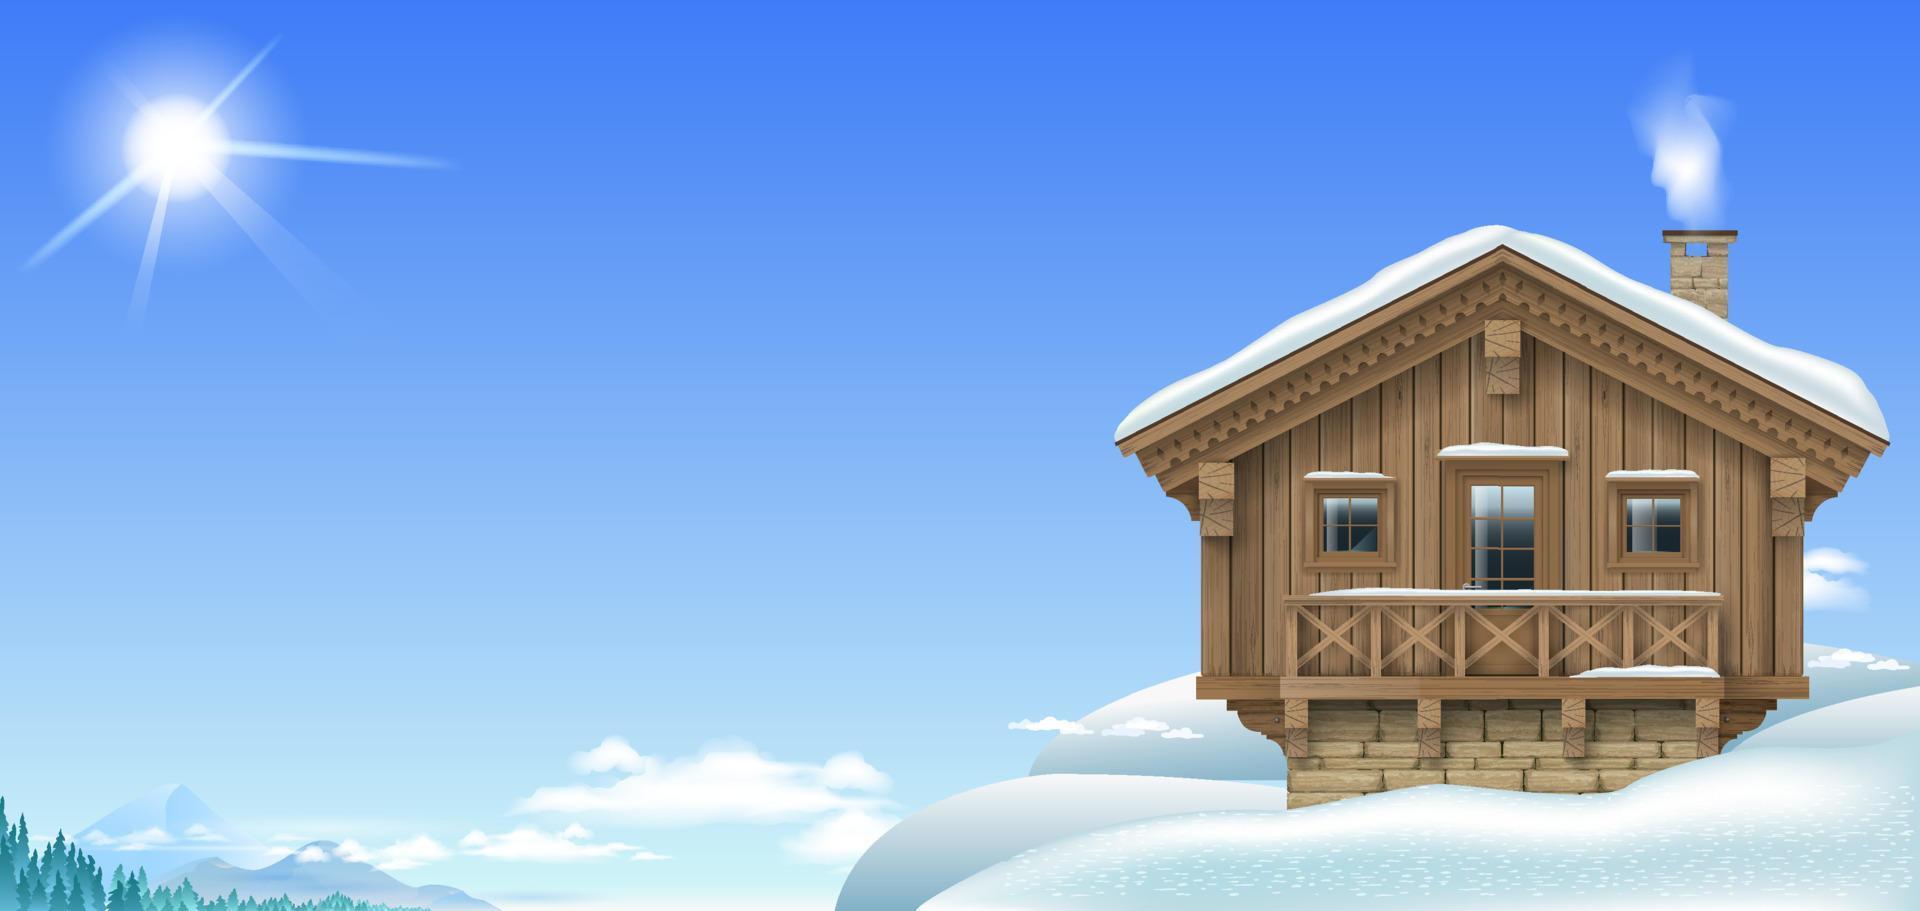 alpine chalet huis in besneeuwd hoog bergen vector